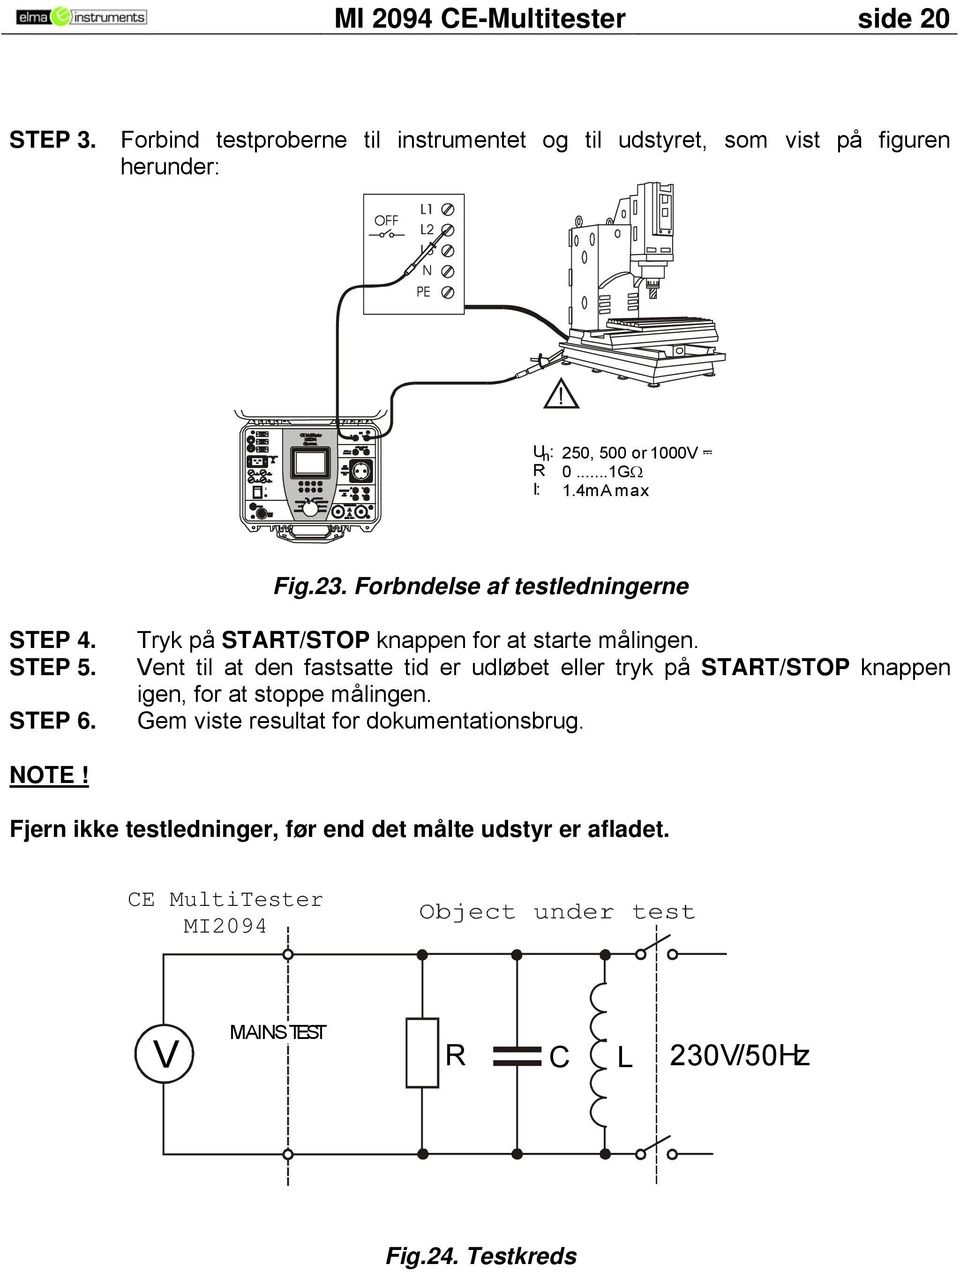 Forbndelse af testledningerne STEP 4. STEP 5. STEP 6. Tryk på START/STOP knappen for at starte målingen.